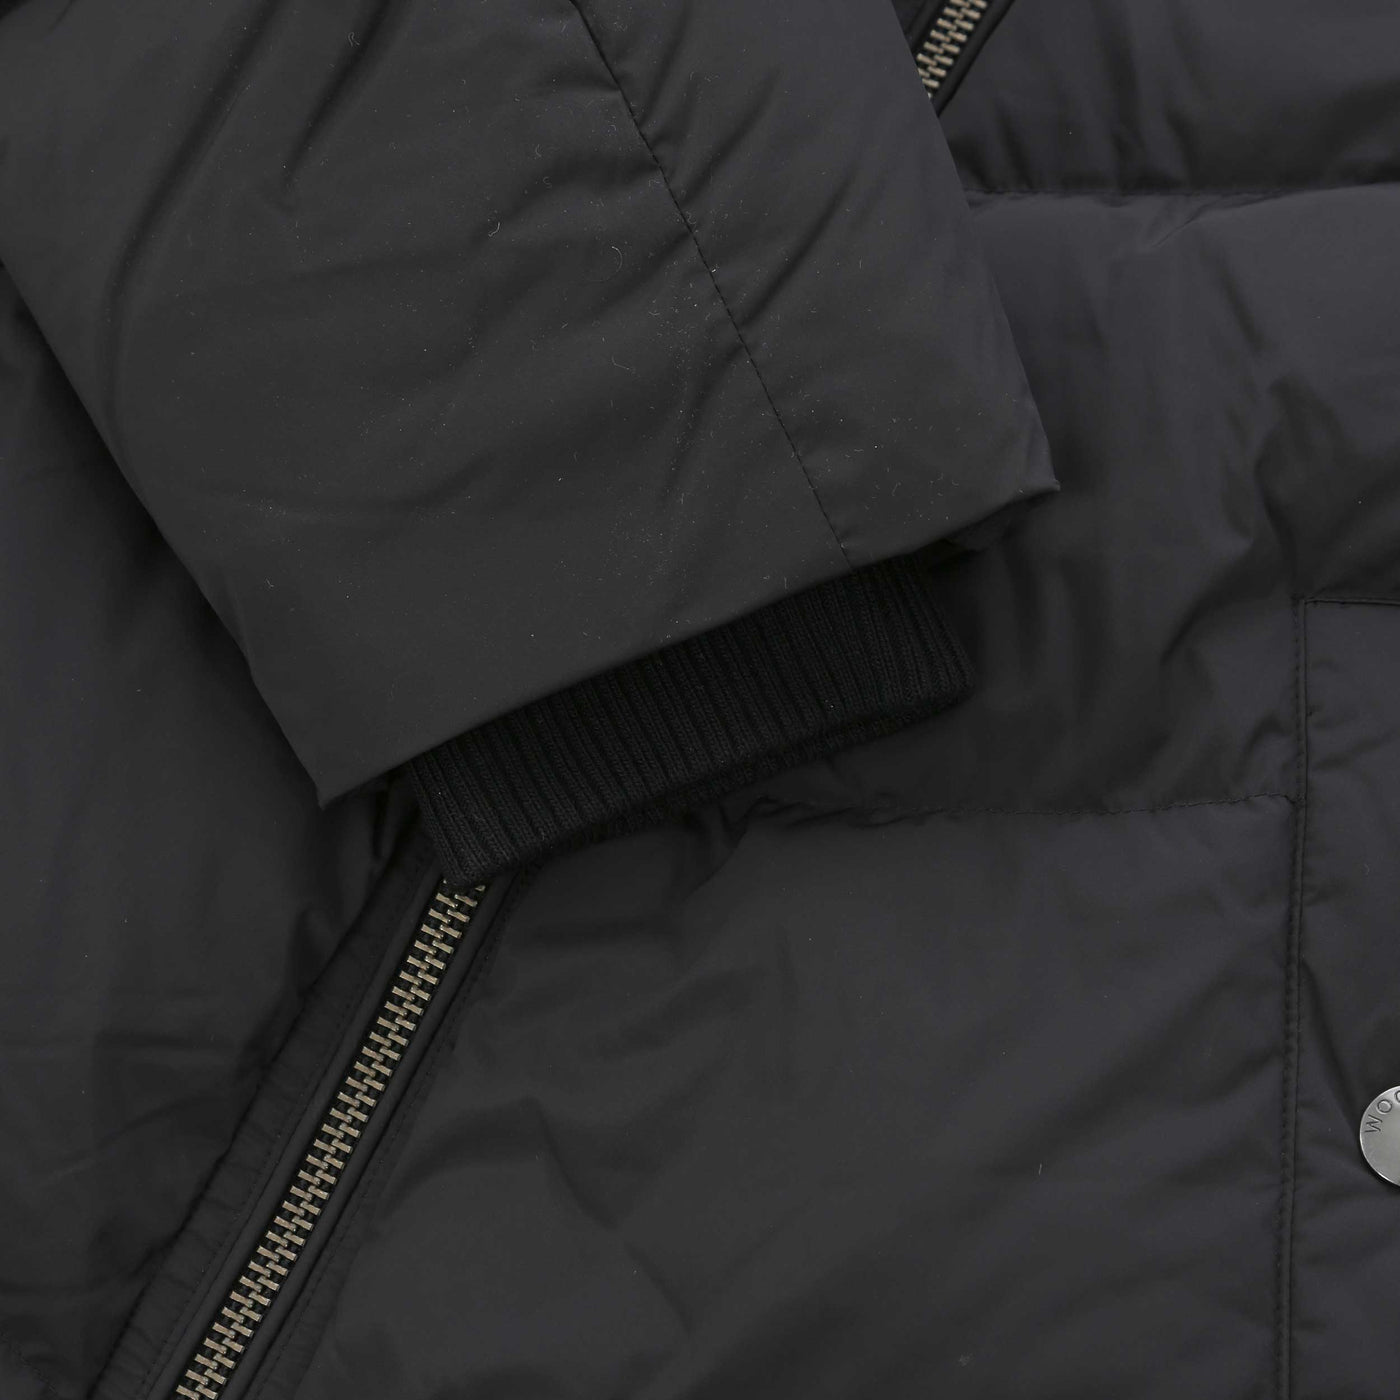 Woolrich Premium Down Jacket in Black Cuff